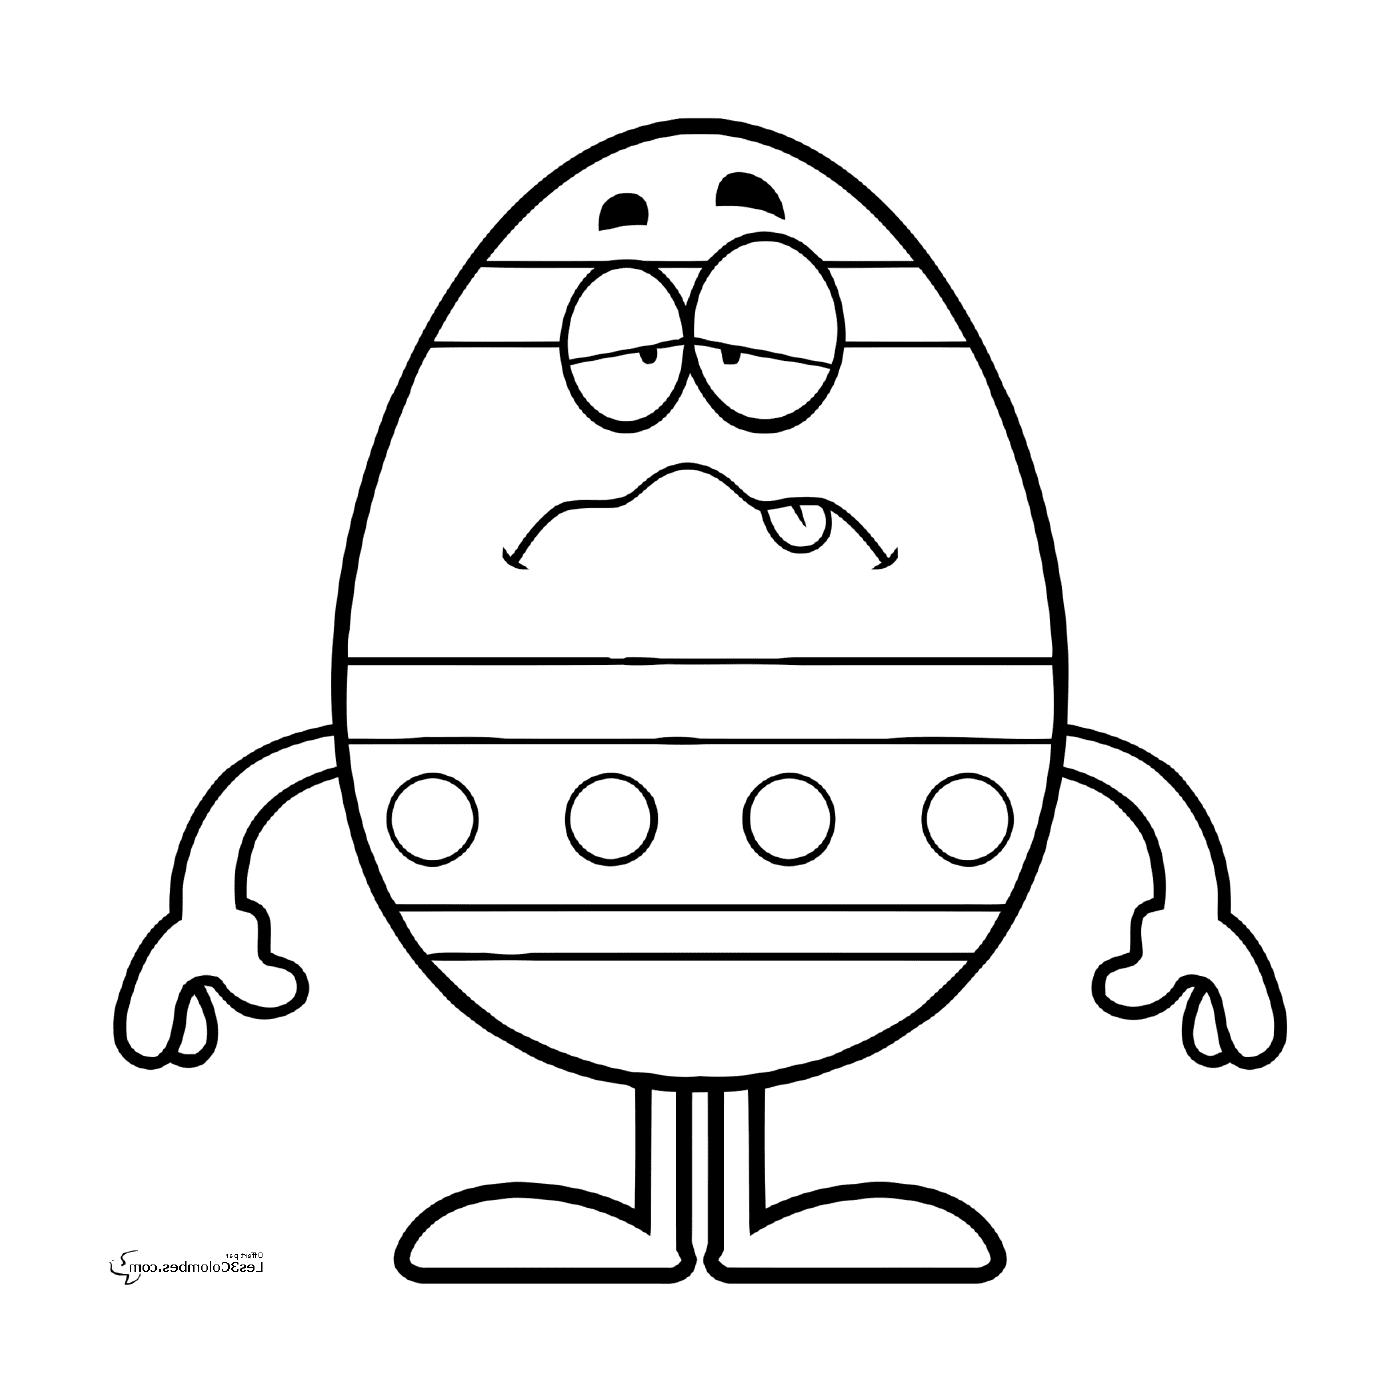   Pâques 196, un œuf de Pâques triste 